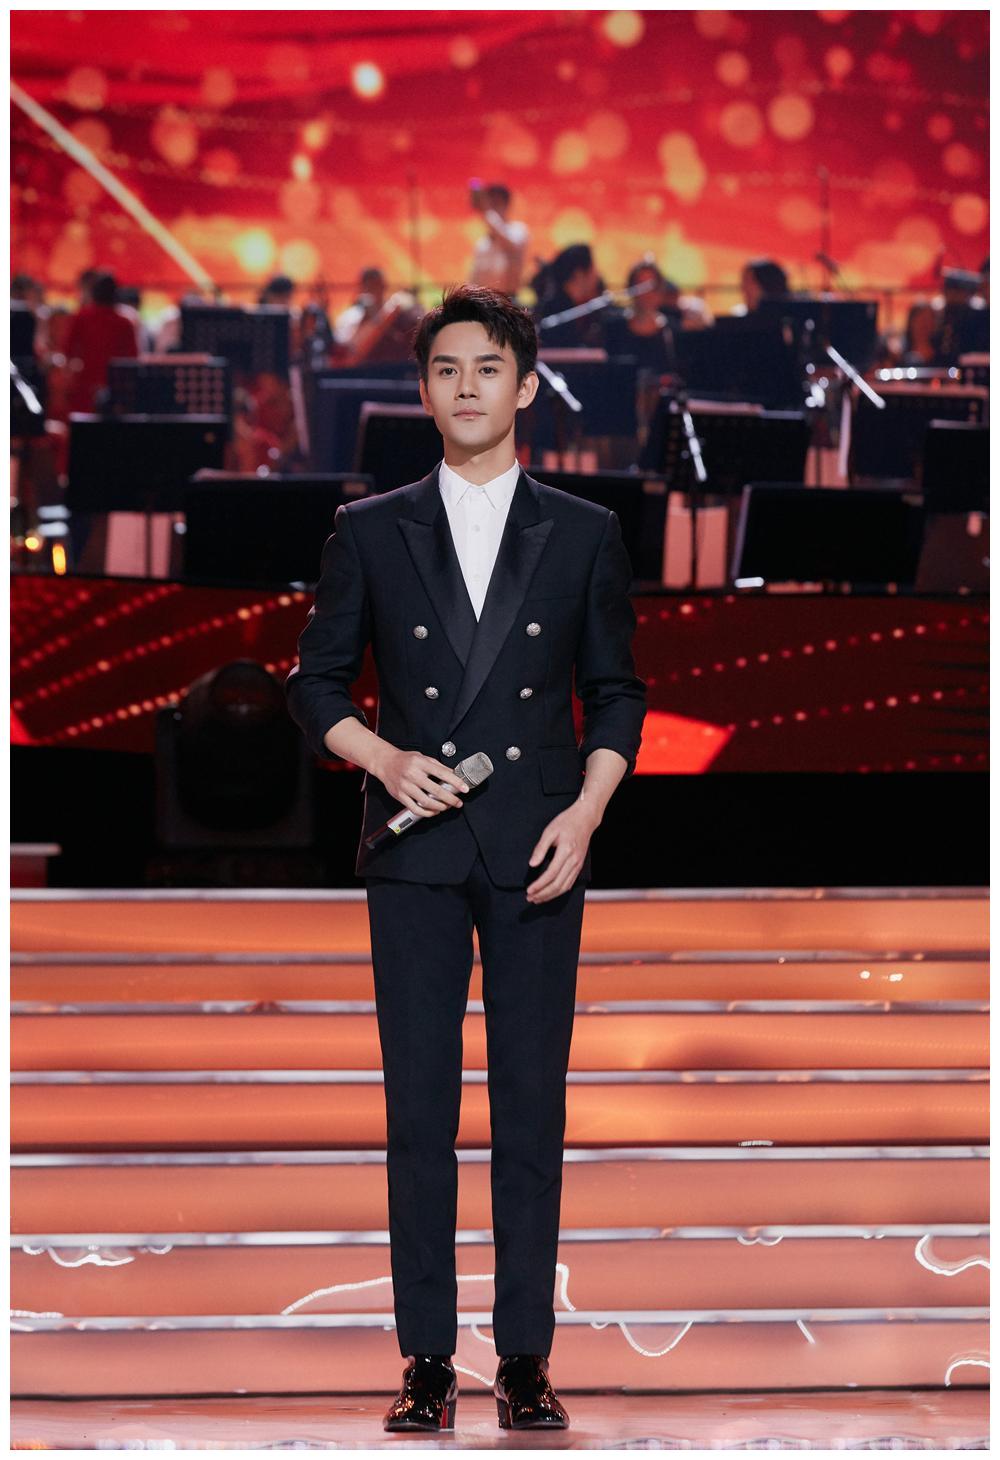 王凯登央视舞台,182身高穿双排扣西装一身正气,男神魅力挡不住